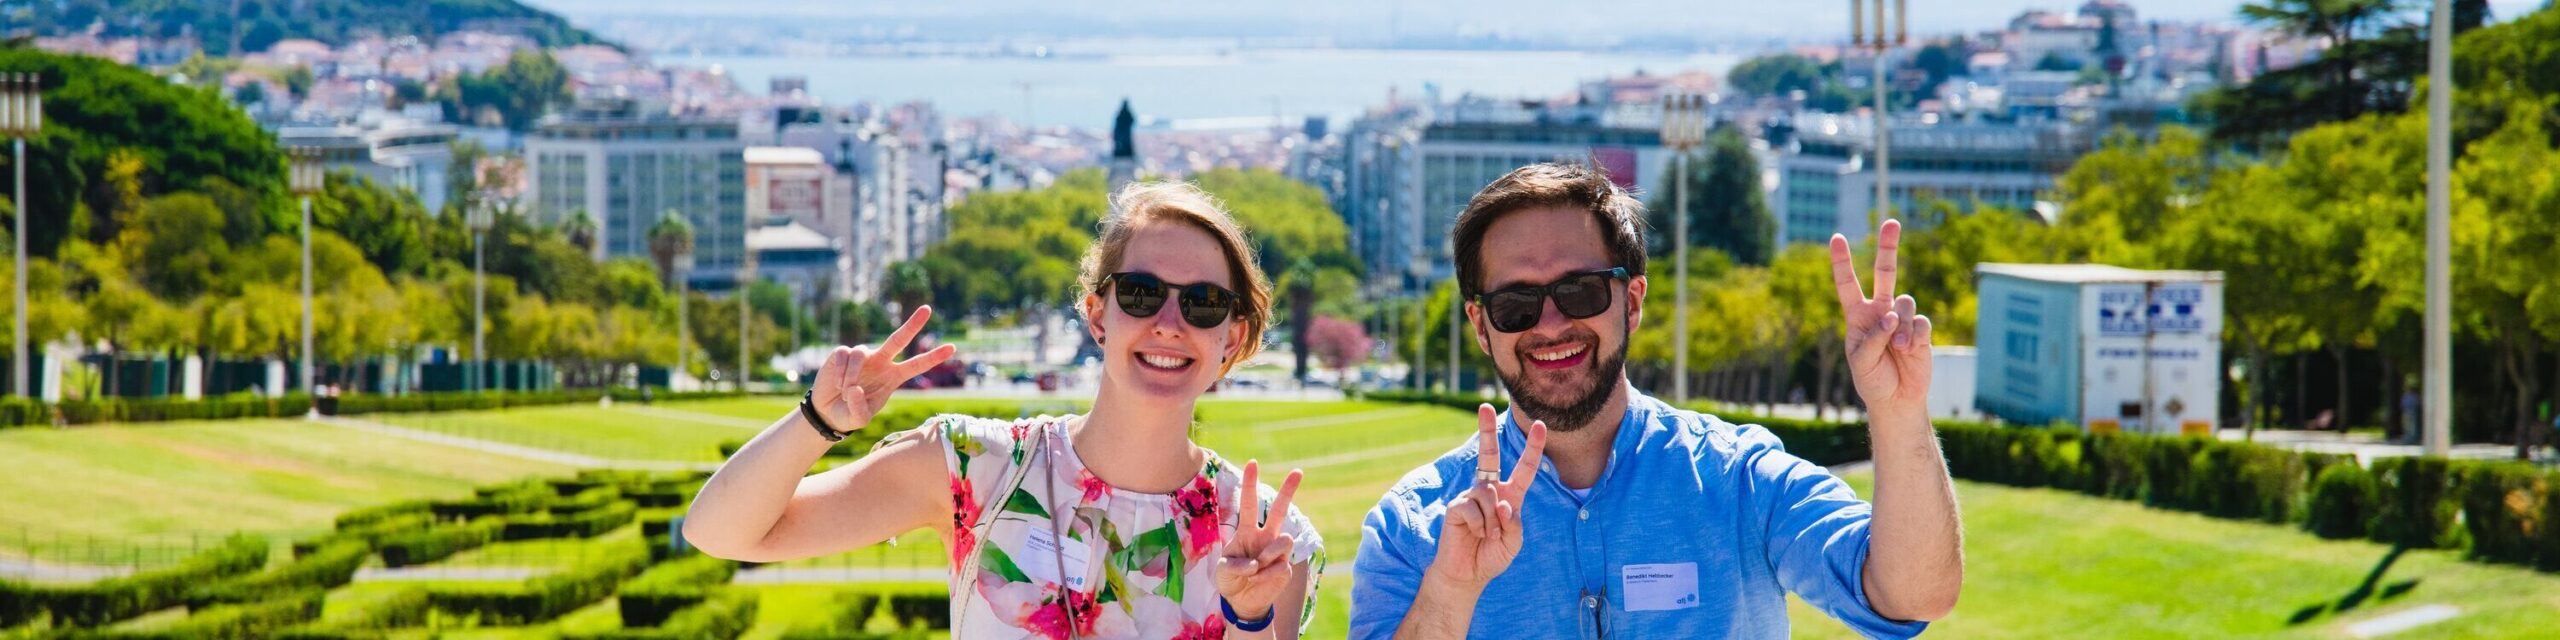 Grüße aus Lissabon von BDKJ-Diözesanseelsorgerin Helena Schmidt und Benedikt Hebbecker, Direktor des Jugendhauses Hardehausen.